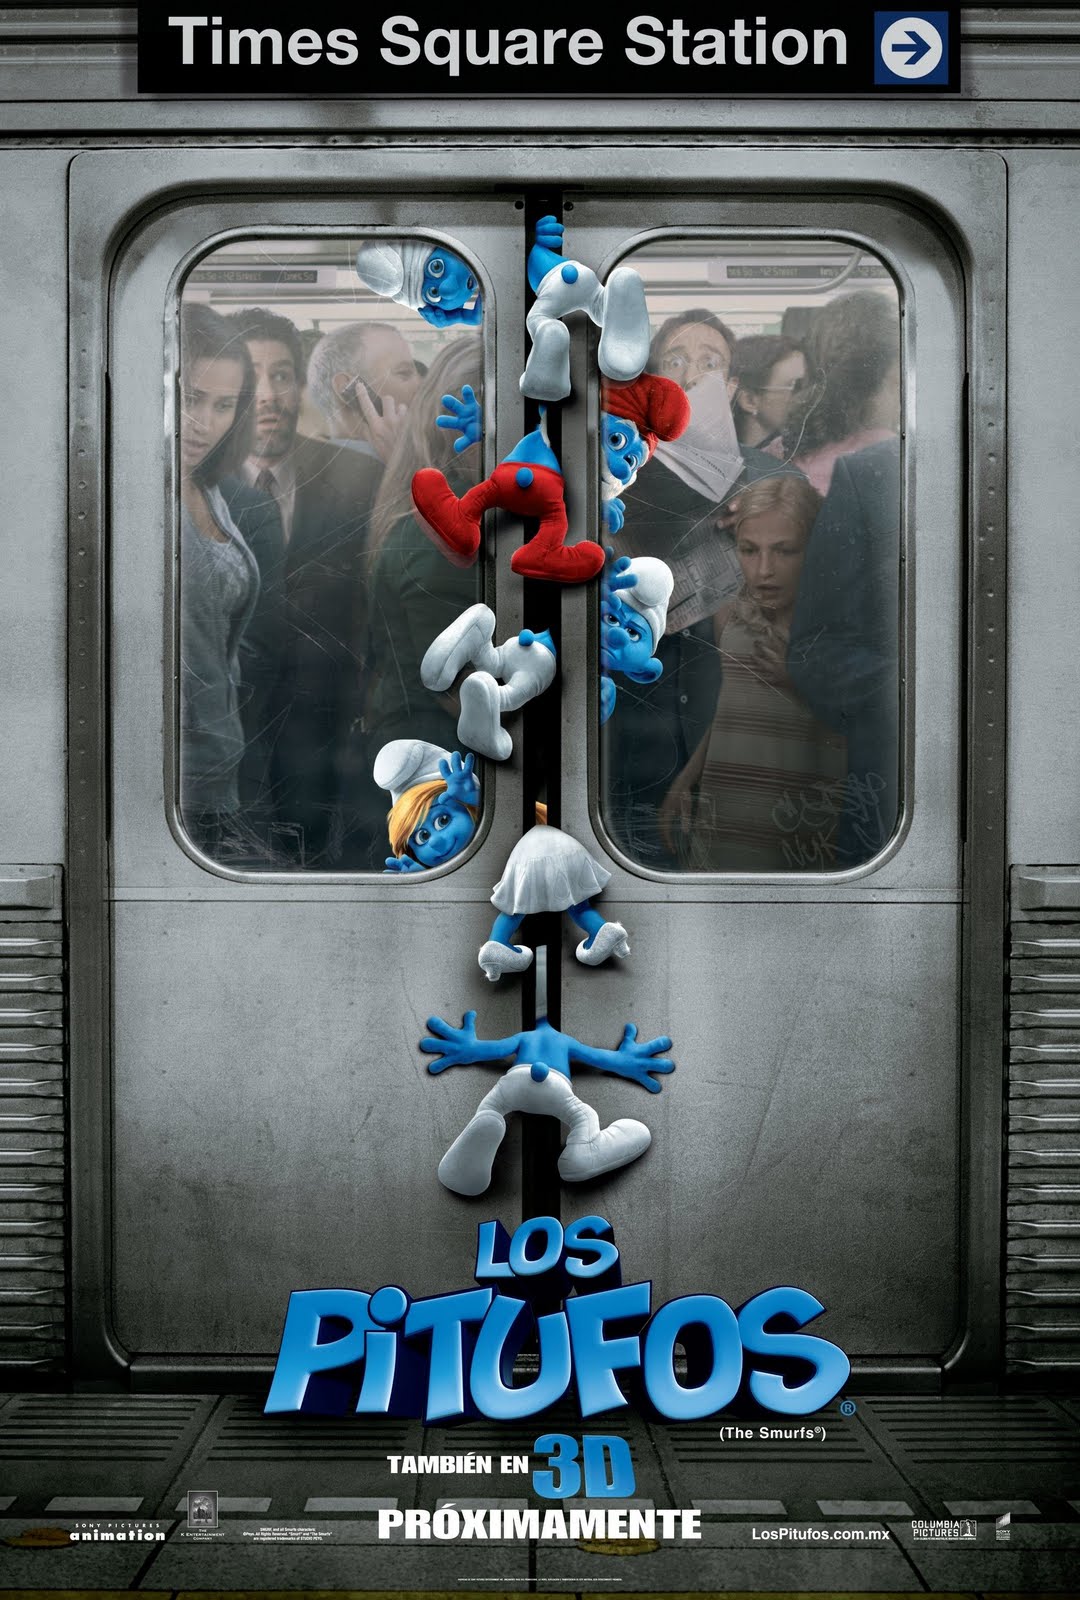 The Smurfs | Teaser Trailer1080 x 1600